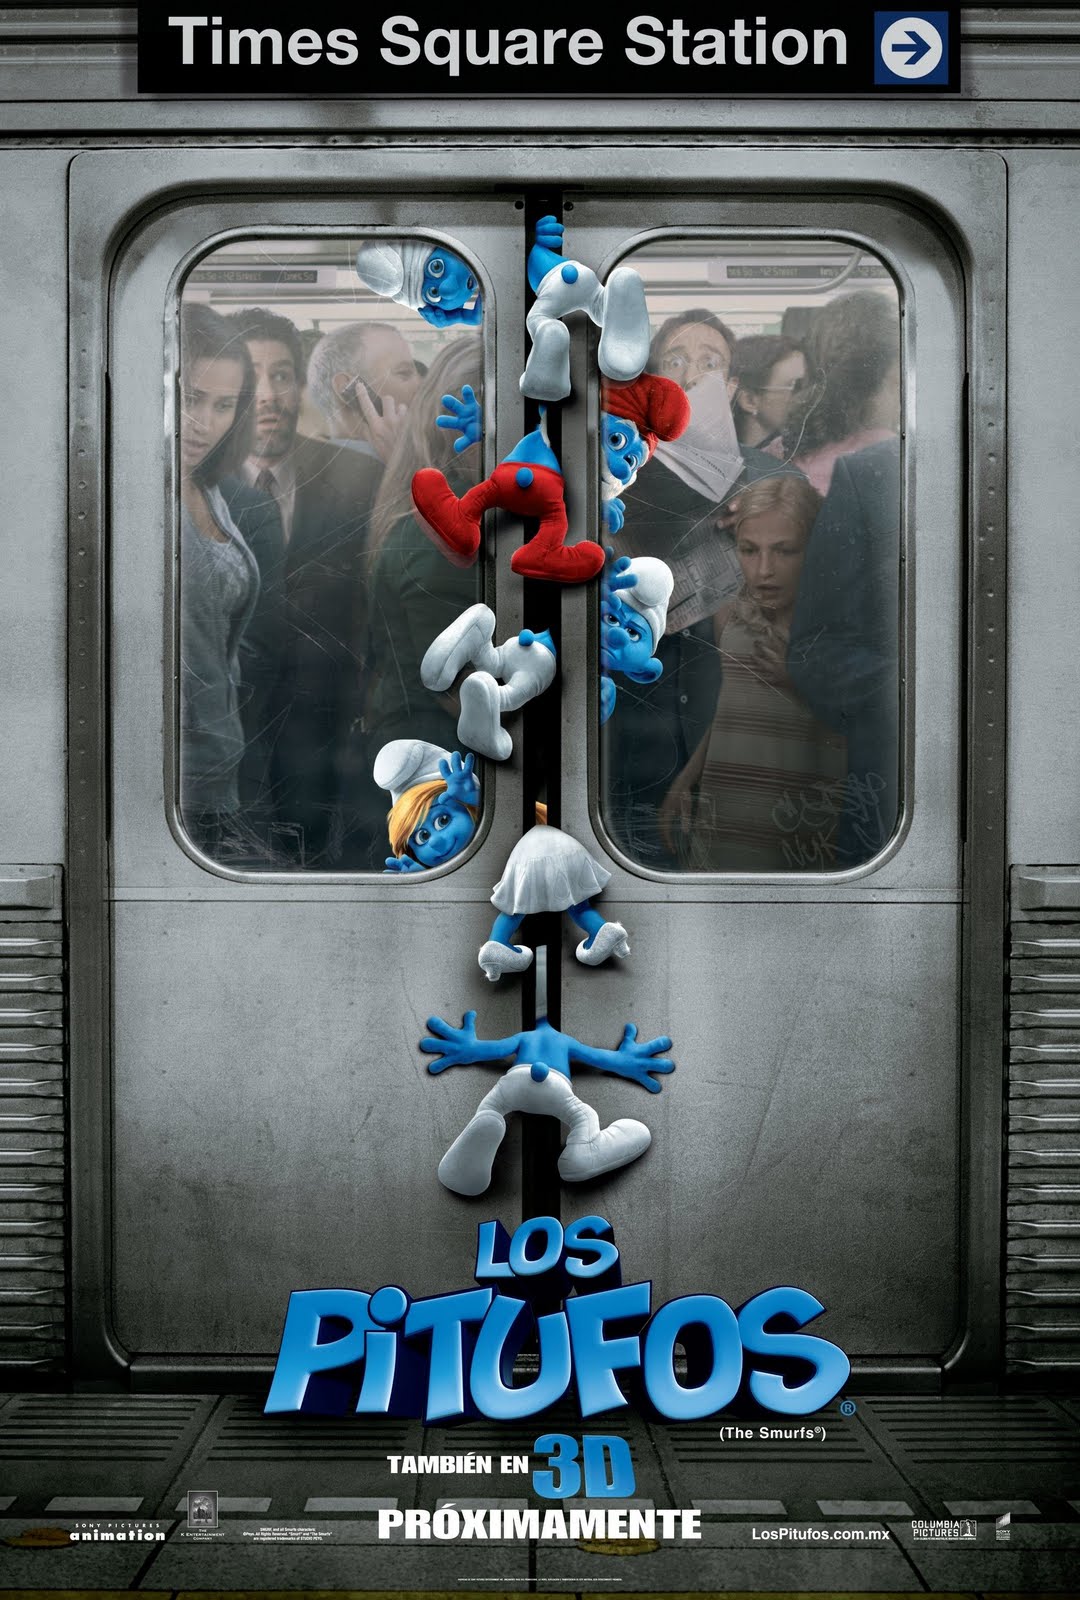 The Smurfs | Teaser Trailer1080 x 1600